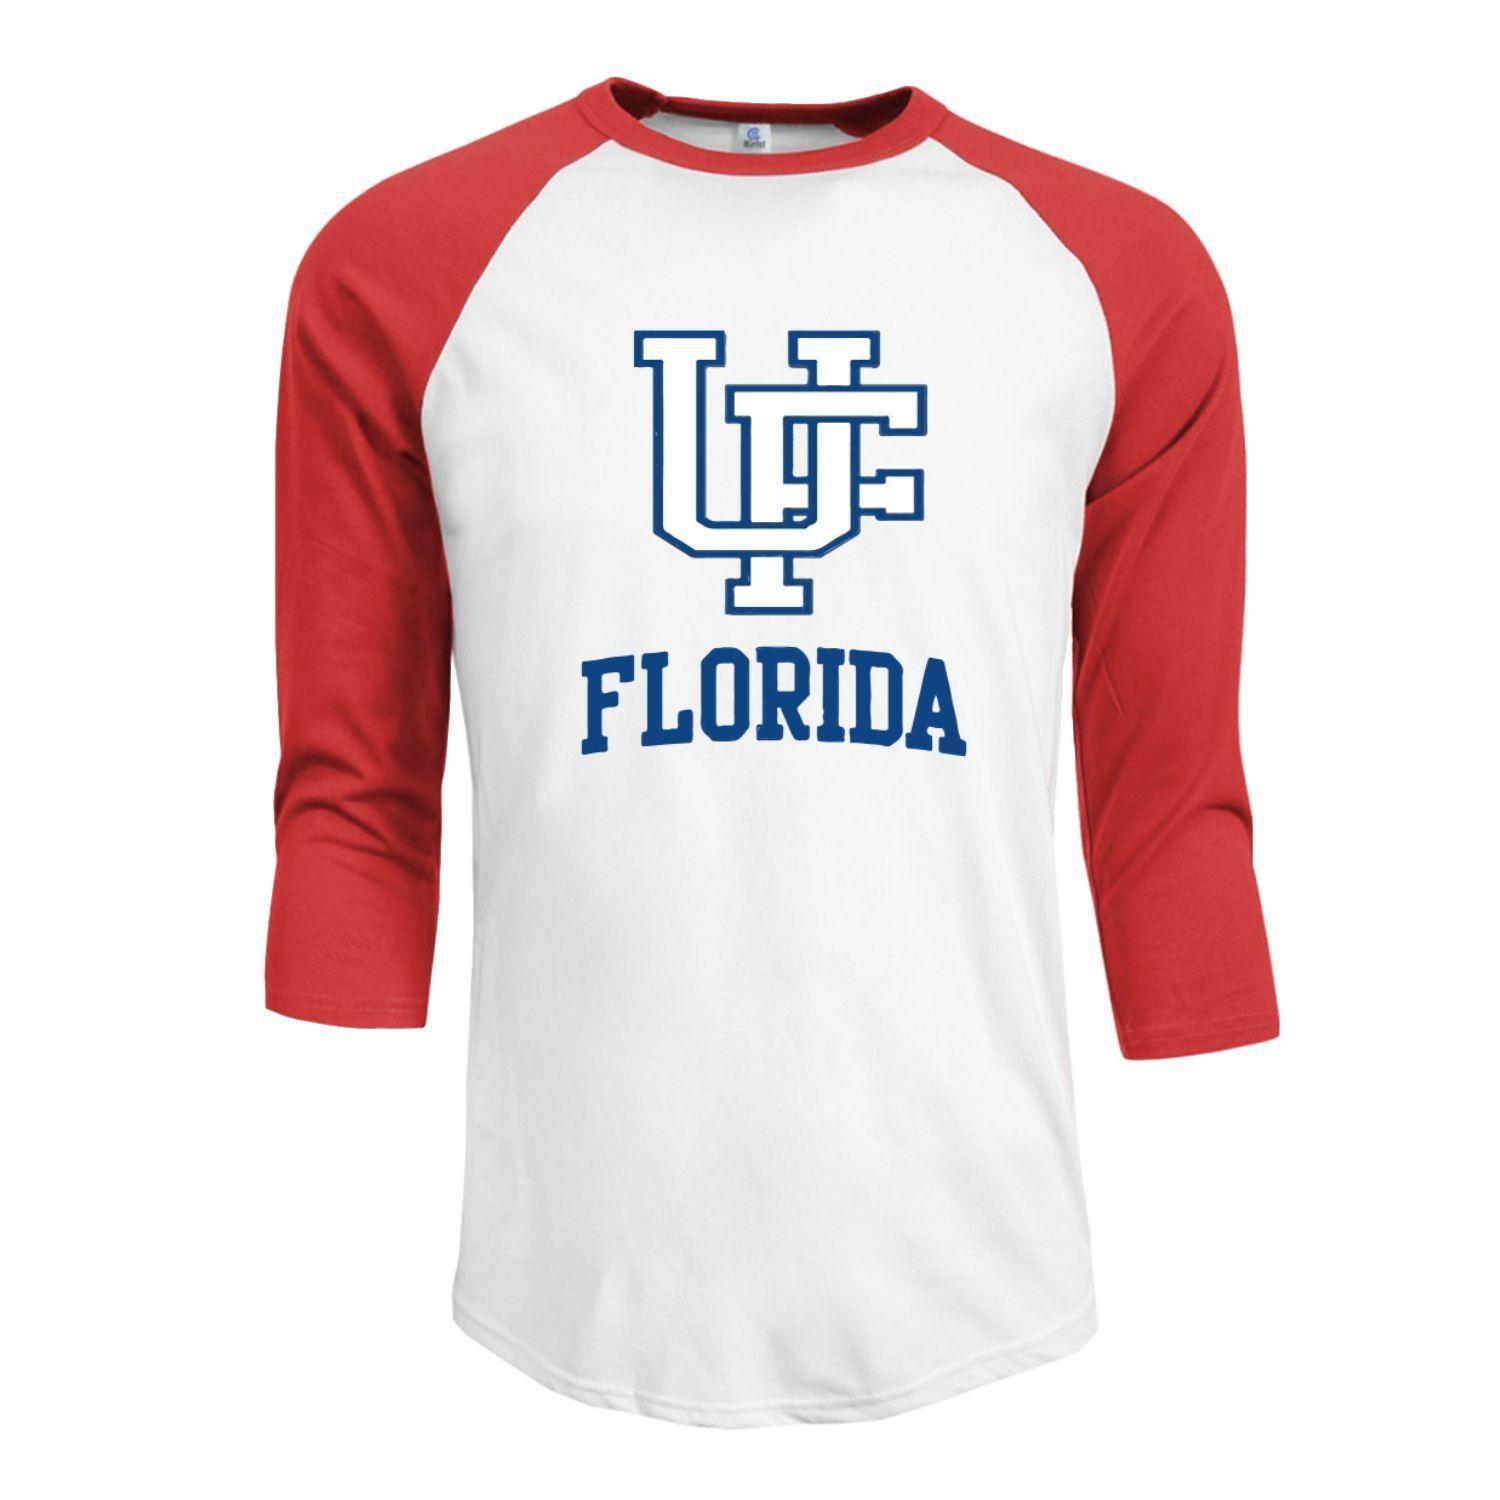 UFL Logo - Amazon.com: Men's Florida Fighting Gators UF UFL Teams Logo 3/4 ...